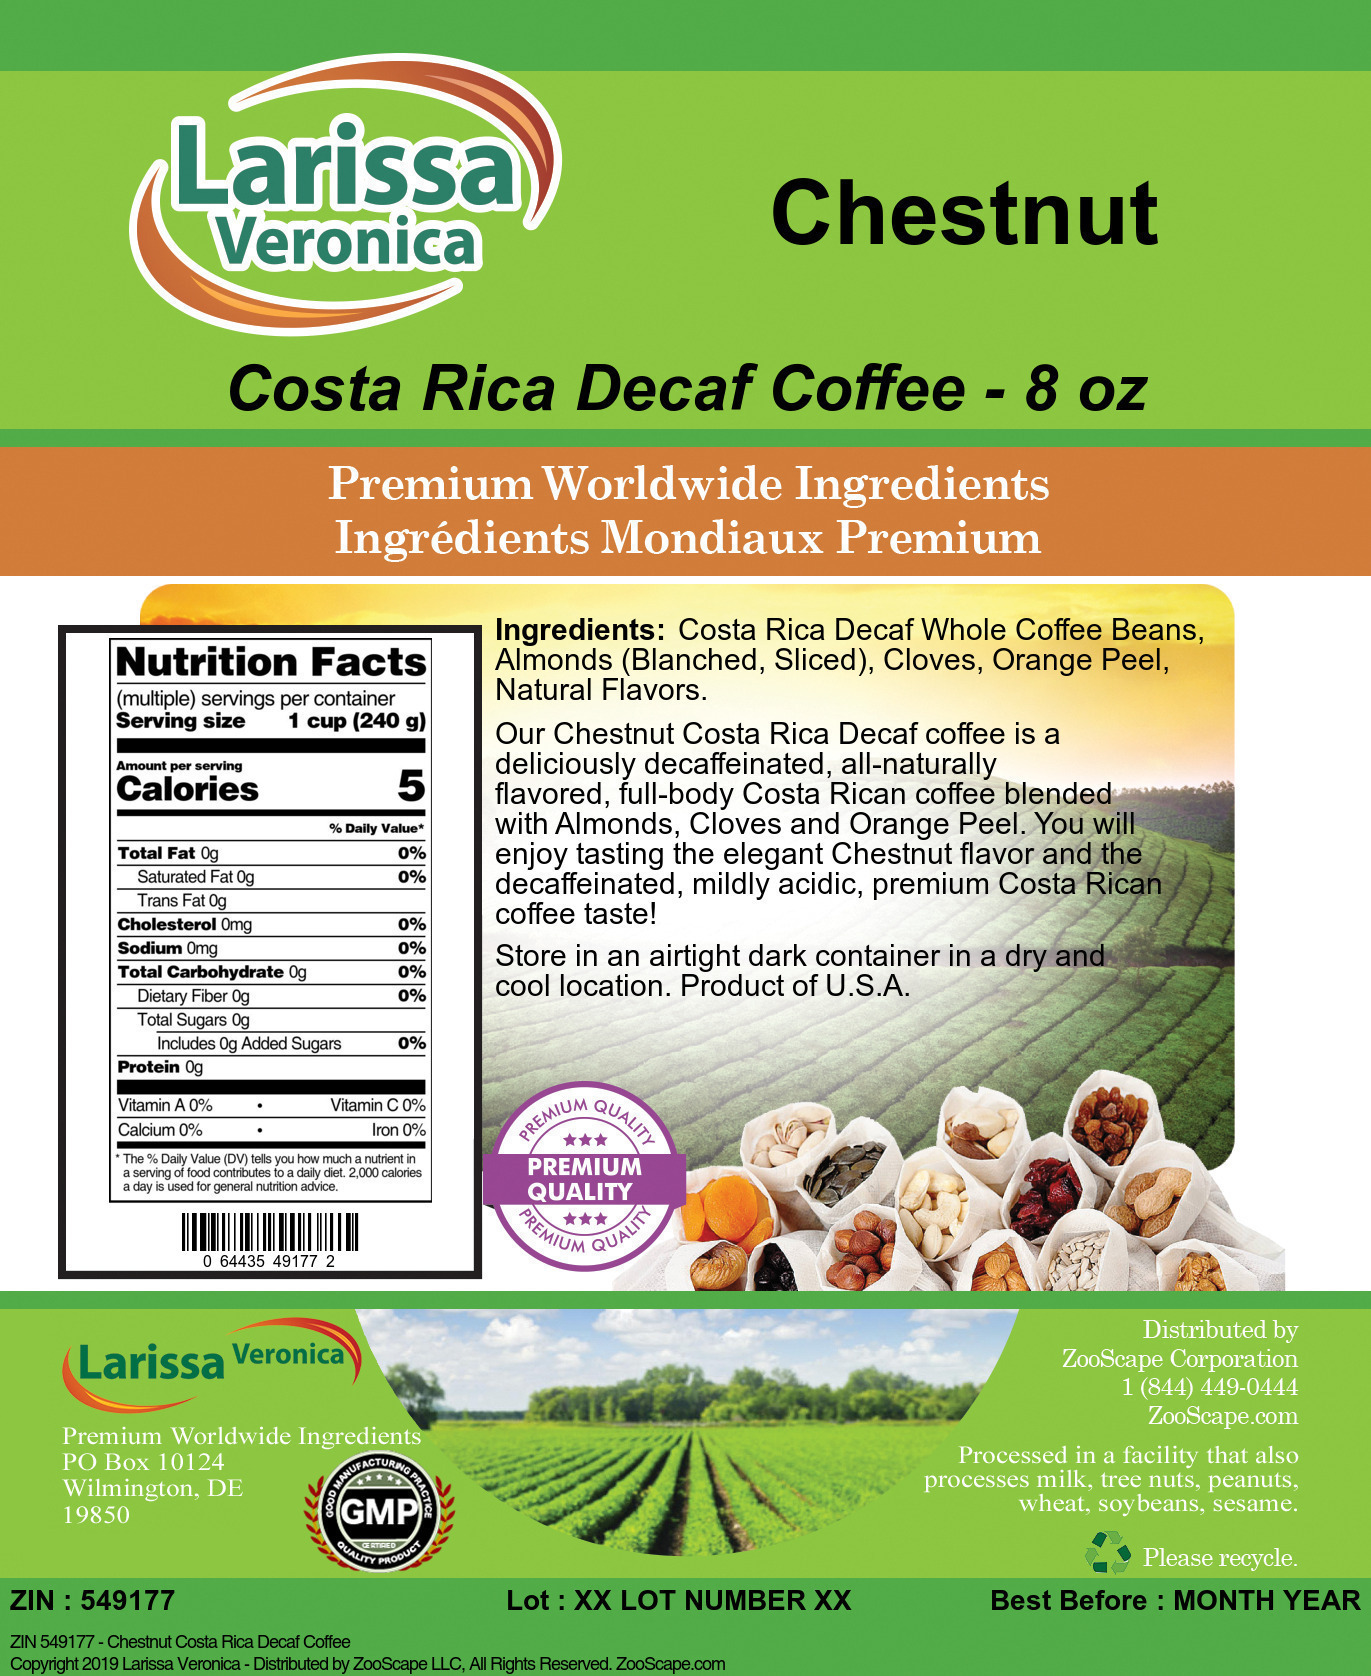 Chestnut Costa Rica Decaf Coffee - Label